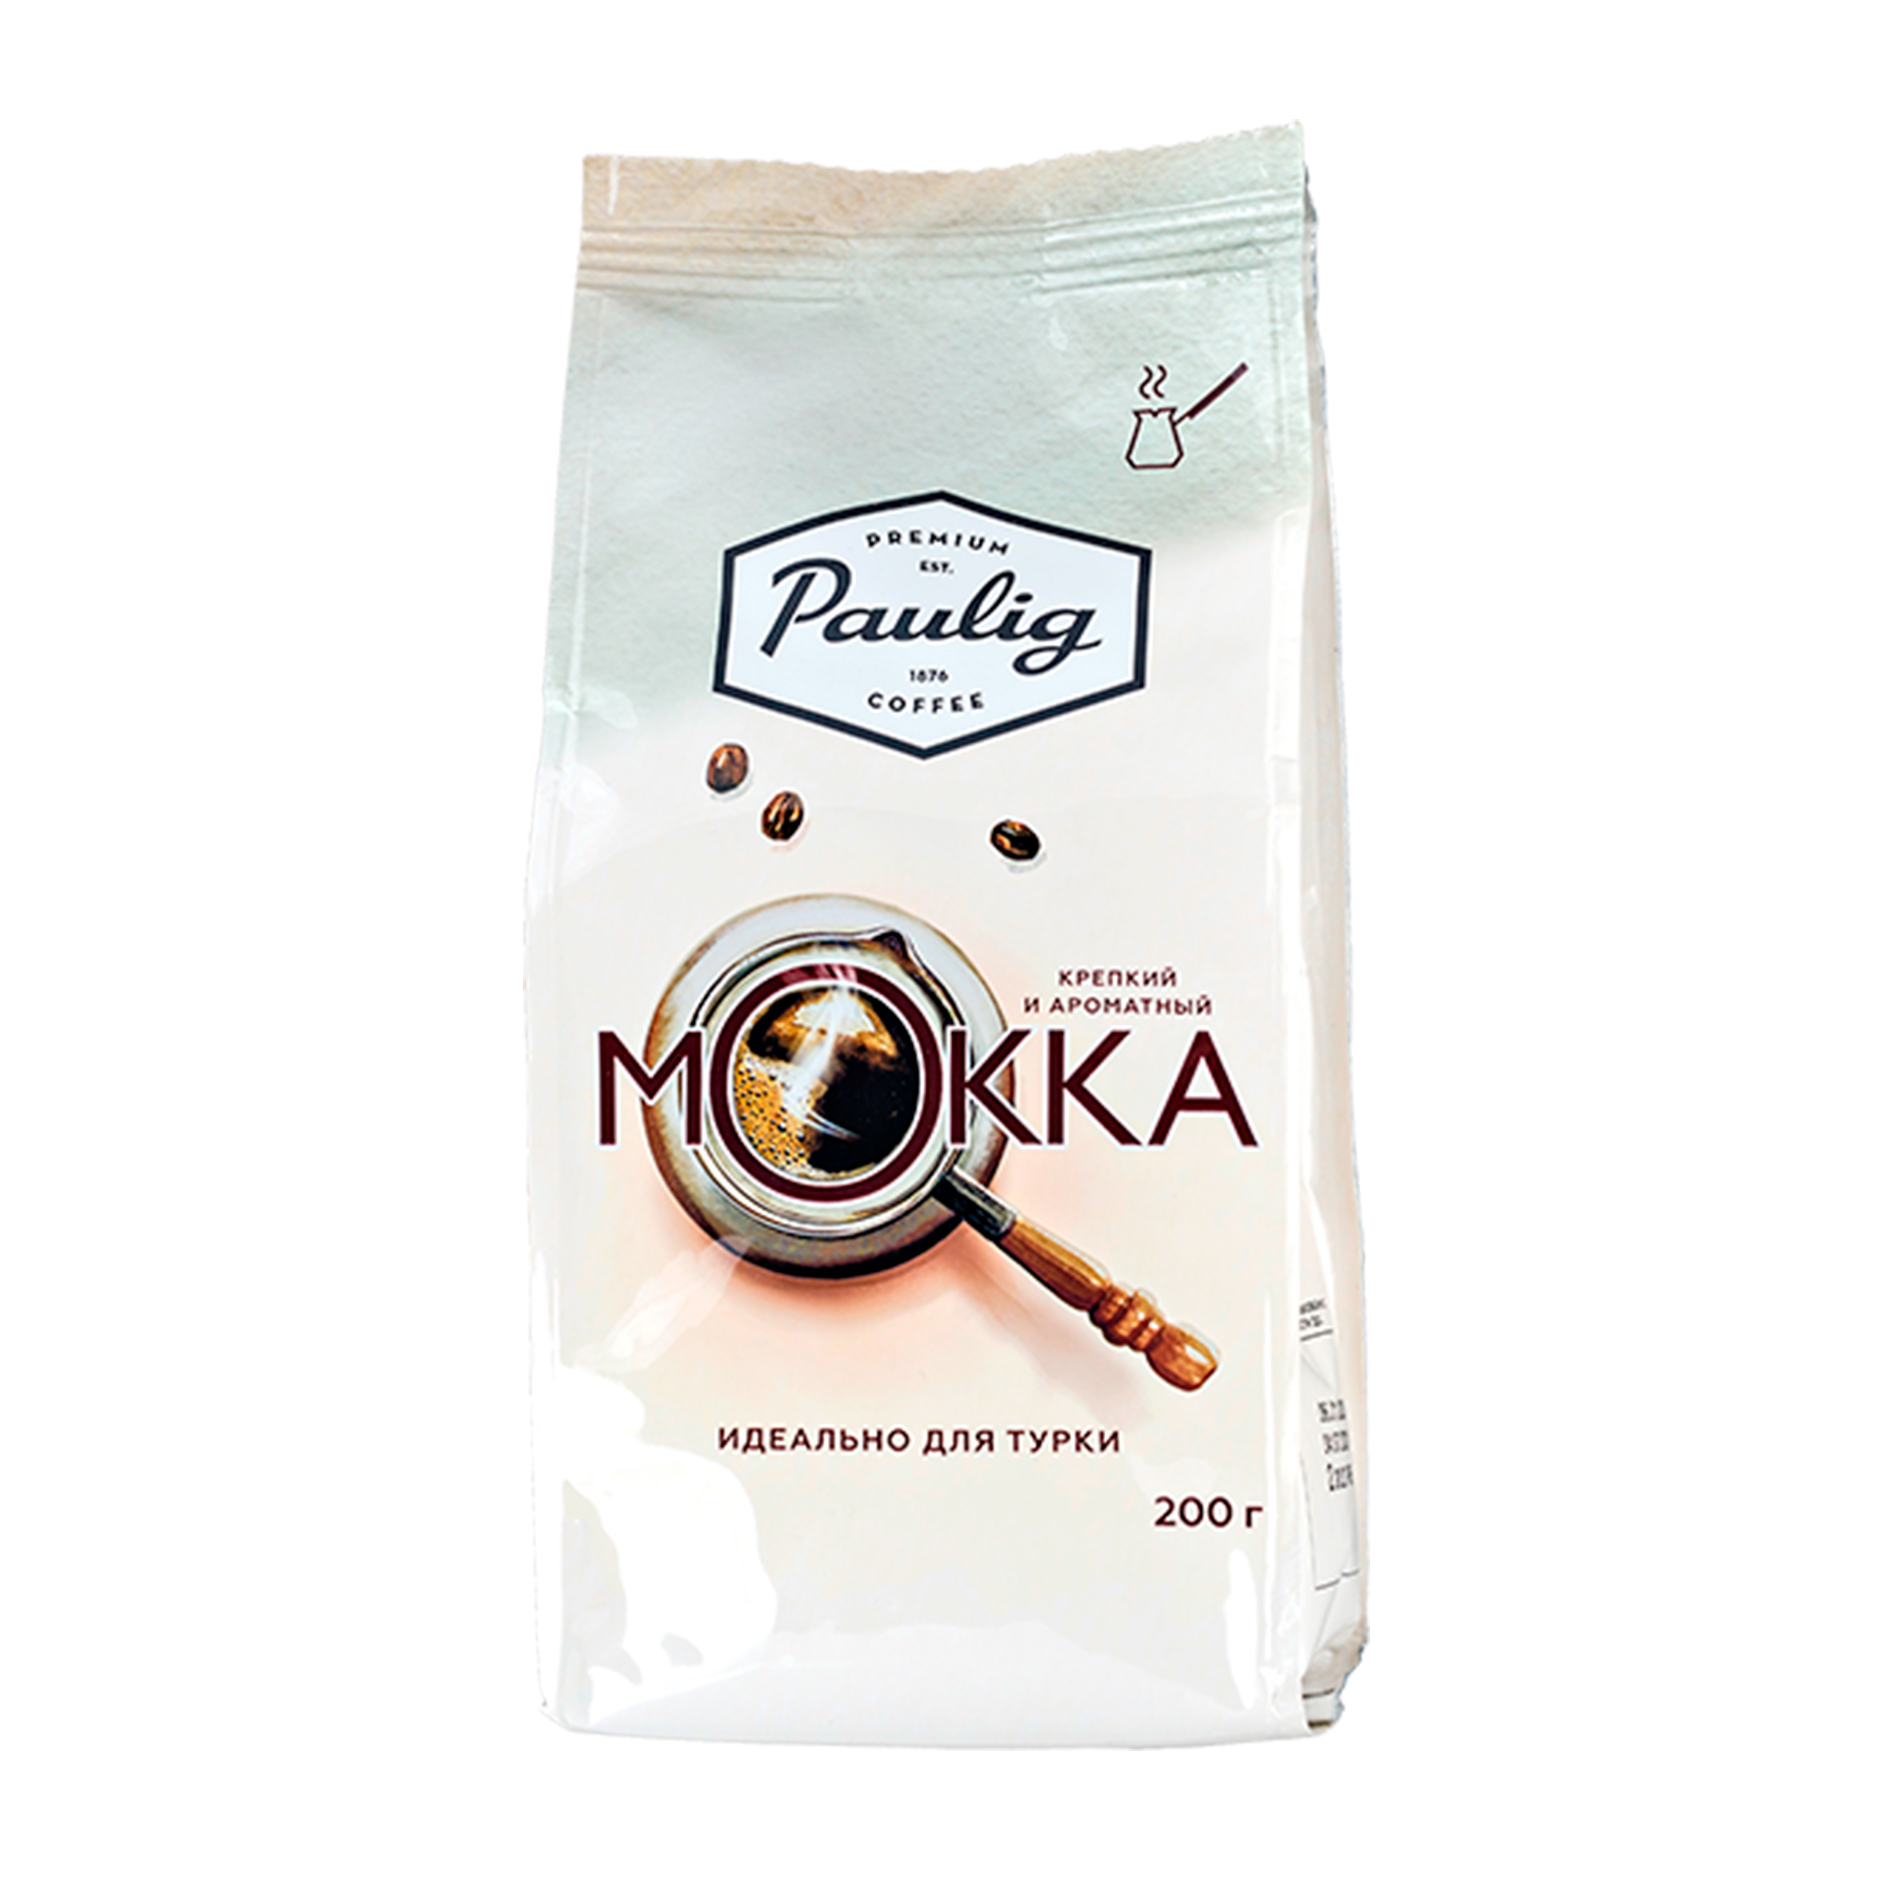 Молотый кофе 200 грамм. Кофе Paulig 200г Mokka. Кофе "Paulig", "Mokka", молотый, 200г. Кофе Паулиг для турки. Паулиг молотый для турки.